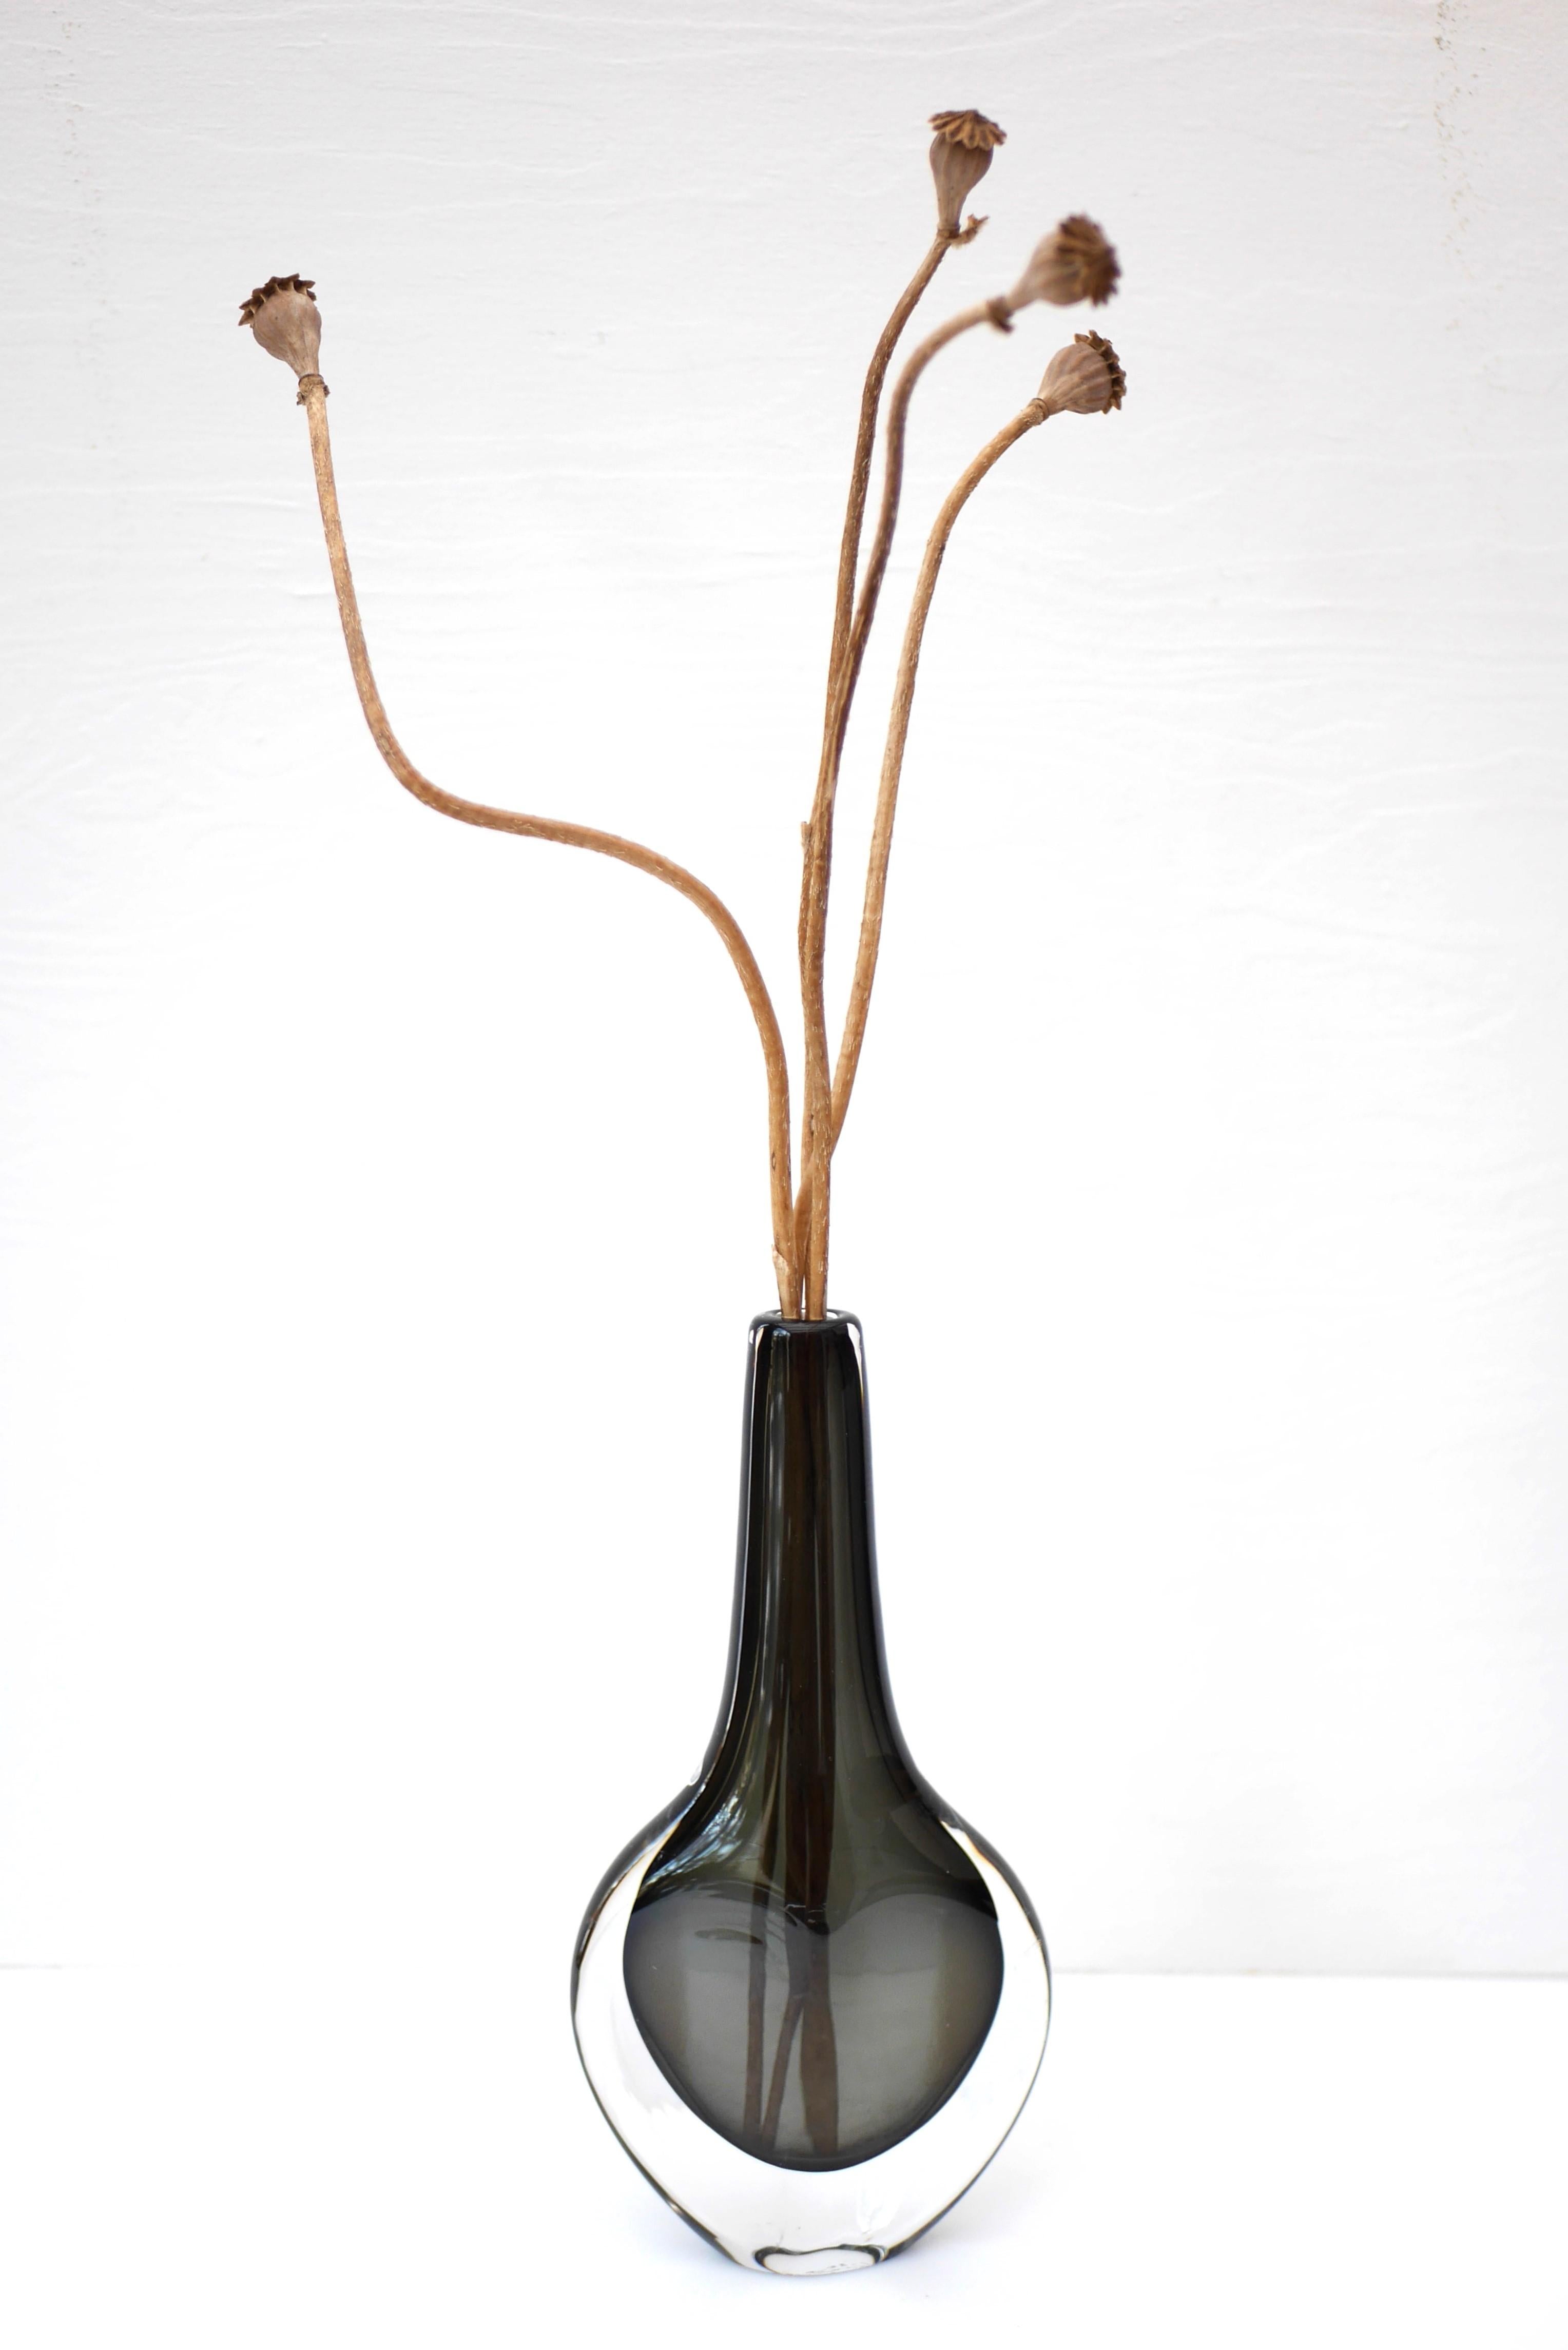 Magnifique vase vintage en verre sommerso soufflé à la bouche et signé par le talentueux Nils Landberg pour les verreries Orrefors, en Suède, dans les années 1960. Ce vase de couleur gris fumé foncé a été recouvert de cristal clair et fait partie de